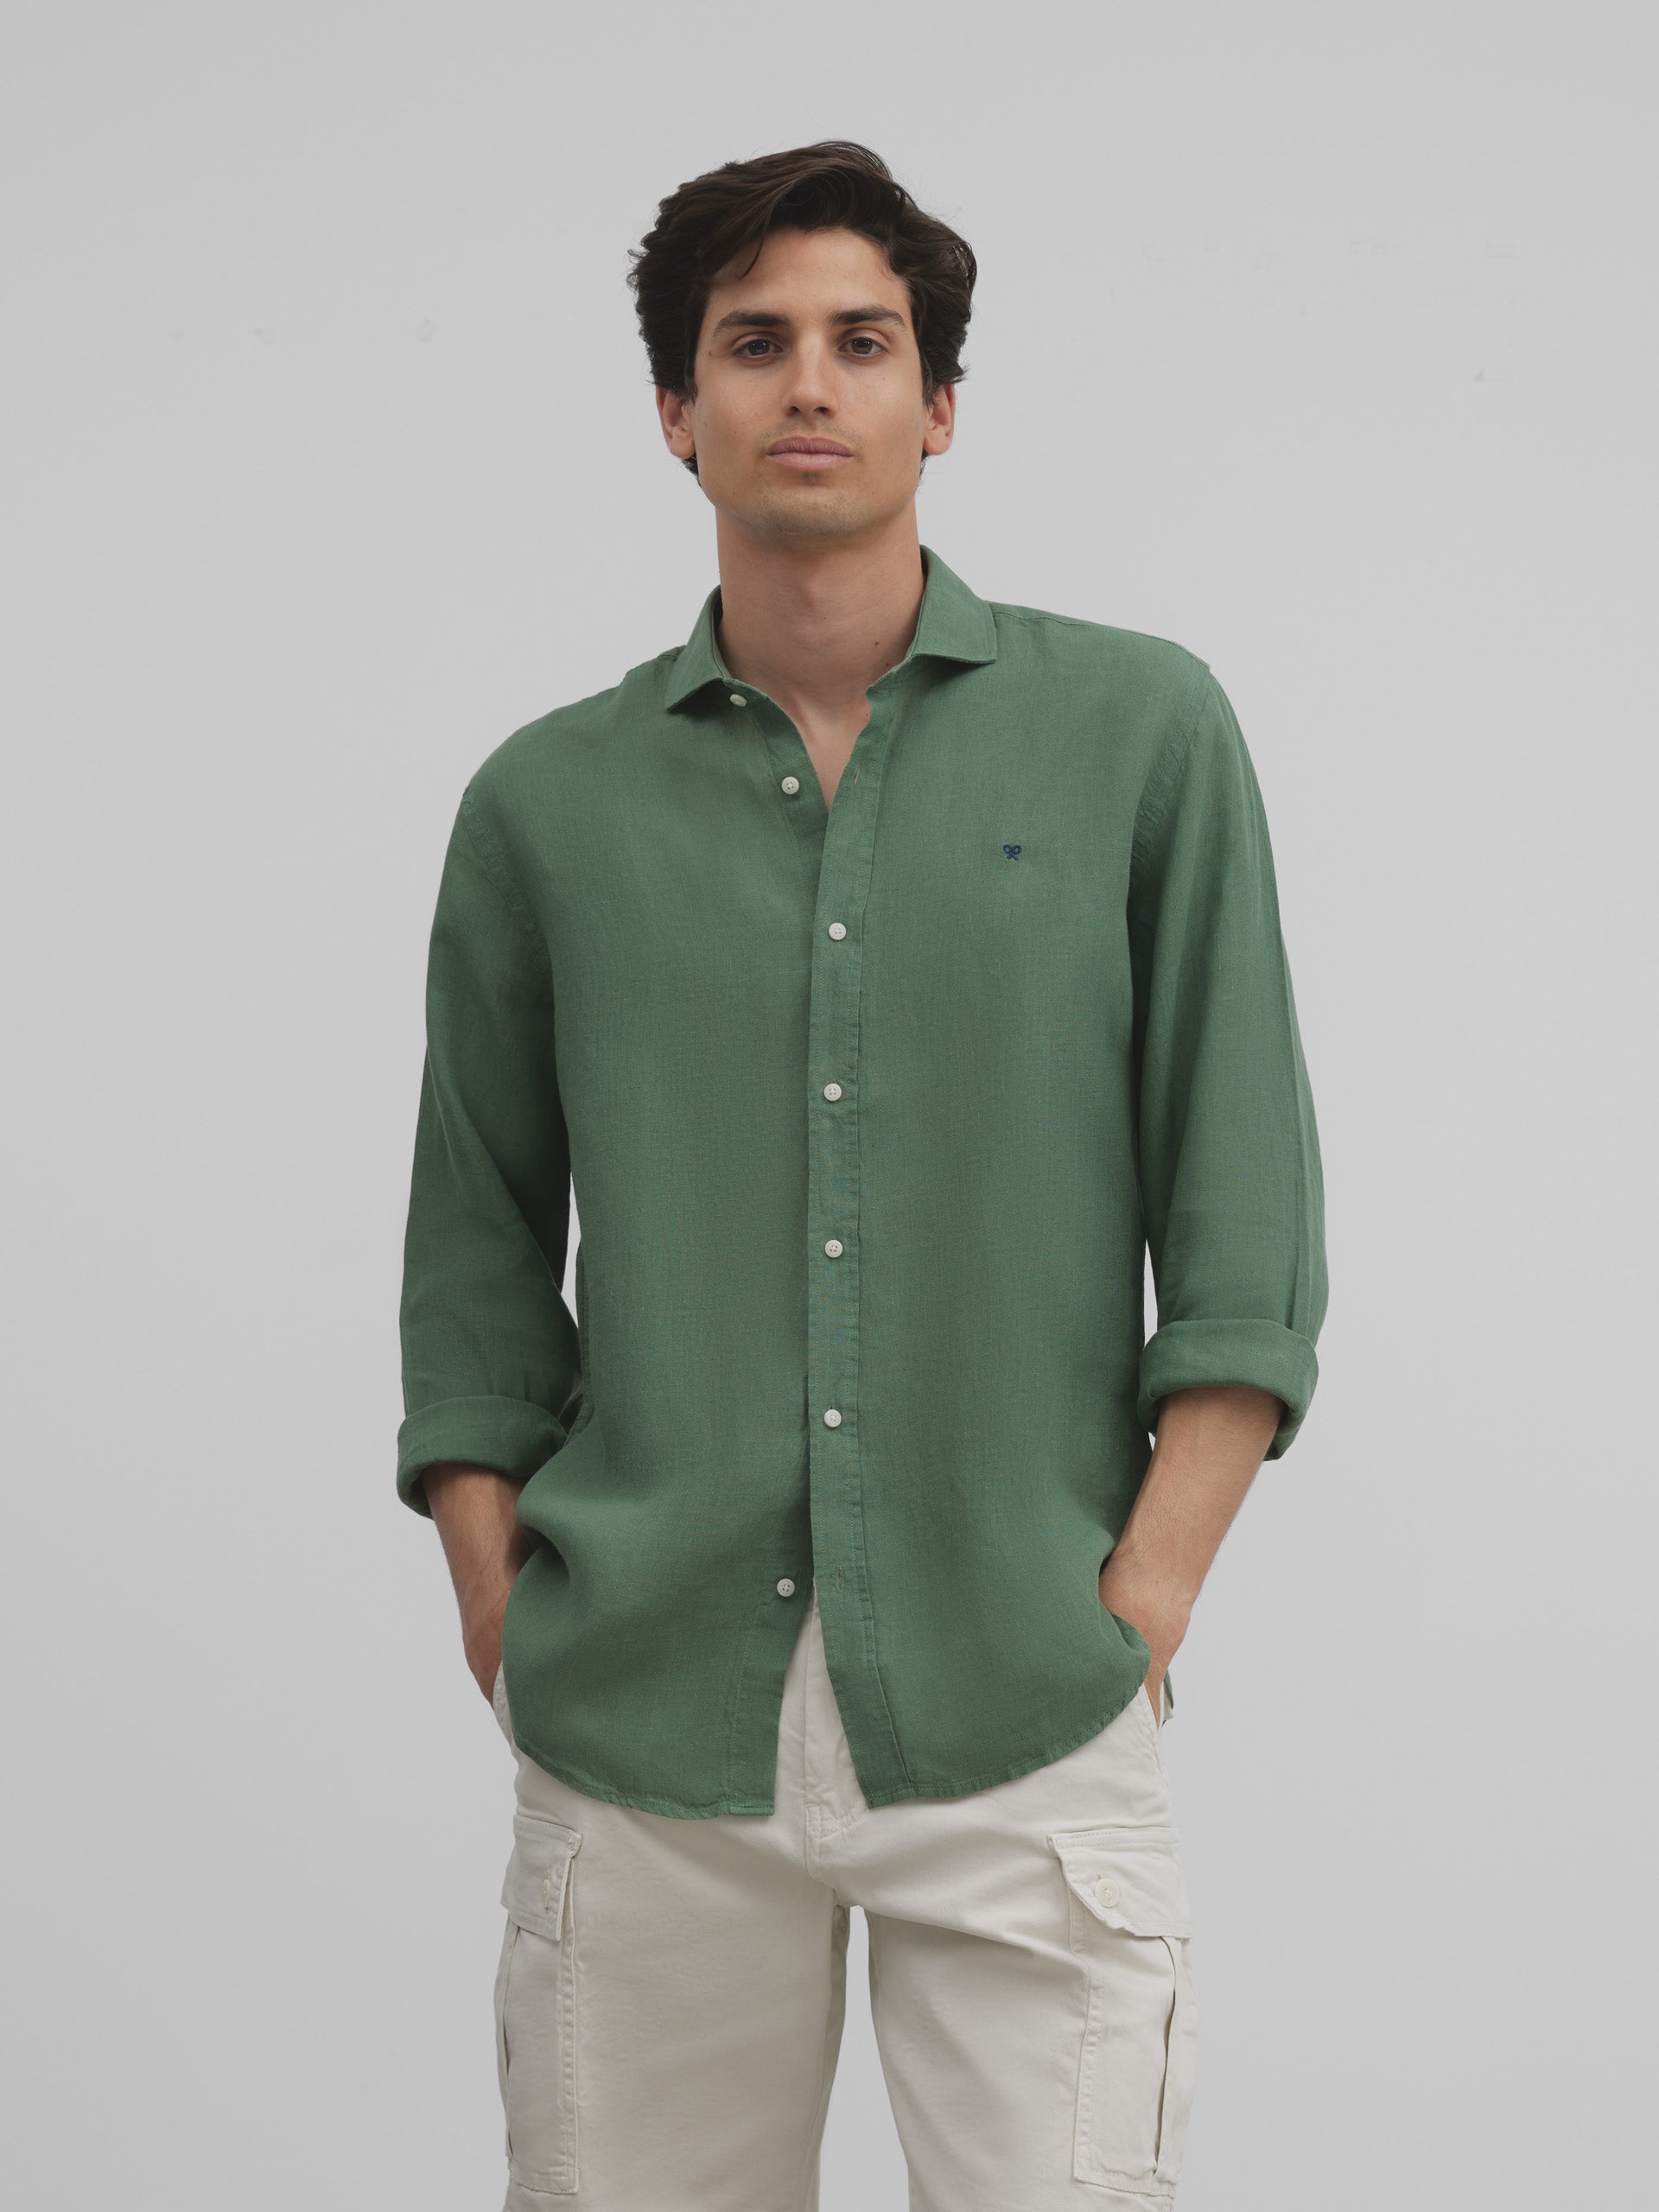 Medium green linen sport shirt